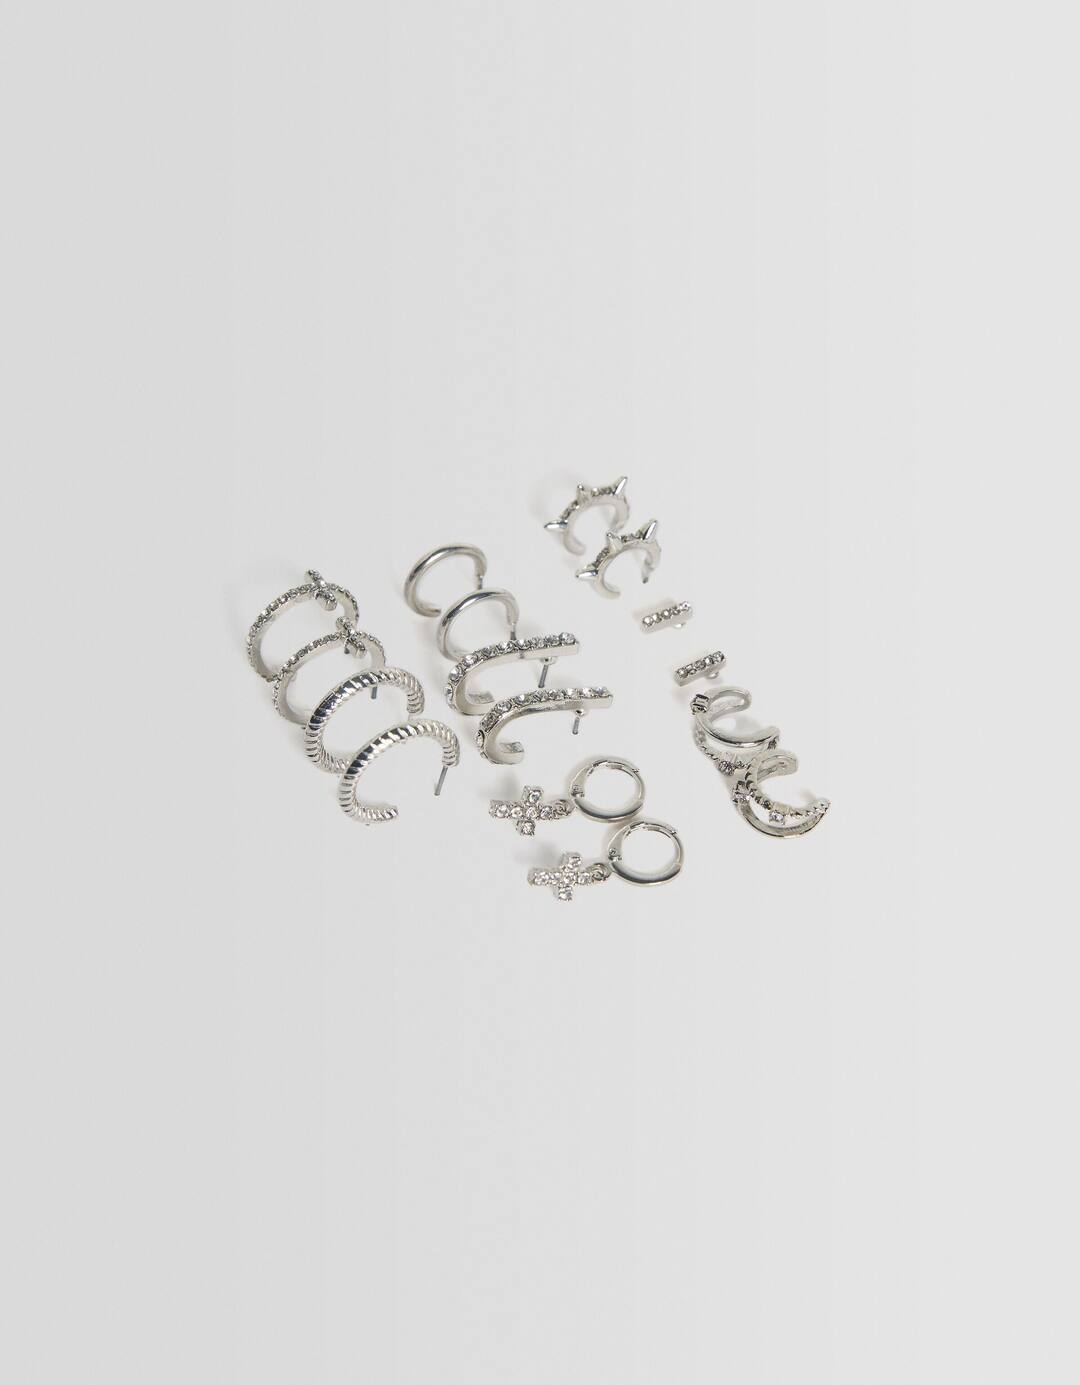 Set of 8 pairs of rhinestone cross earrings